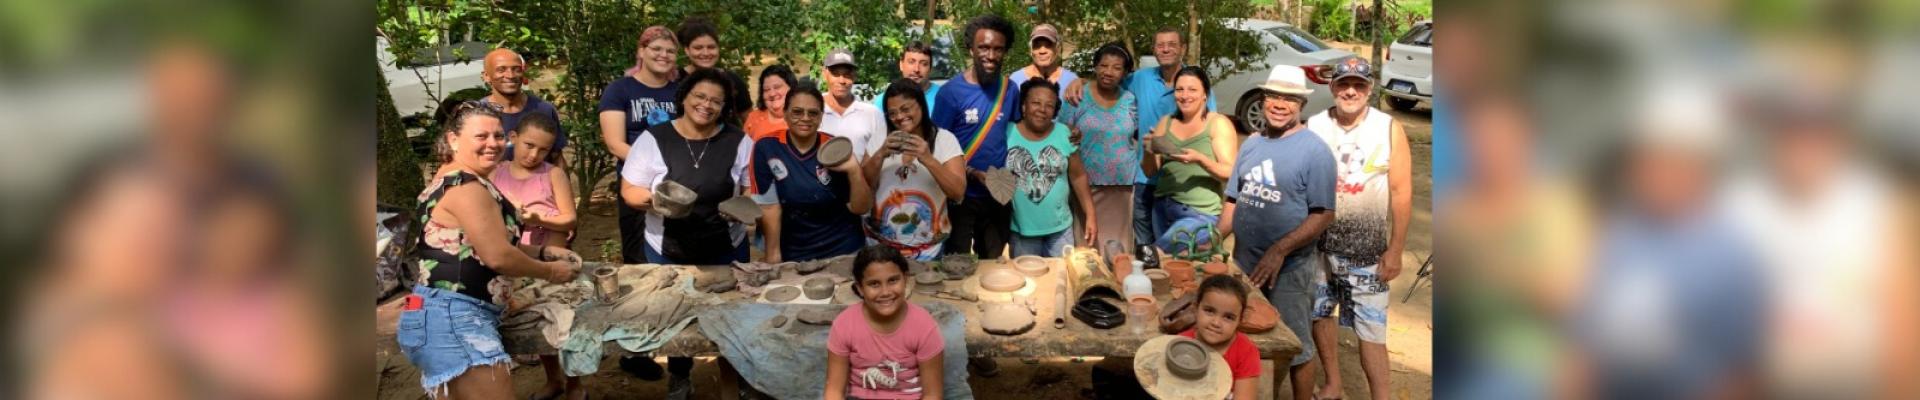 Extensionistas Sem Fronteiras: Escritórios Locais da Emater-Rio promovem evento de cerâmica em comunidade tradicional de Mangaratiba